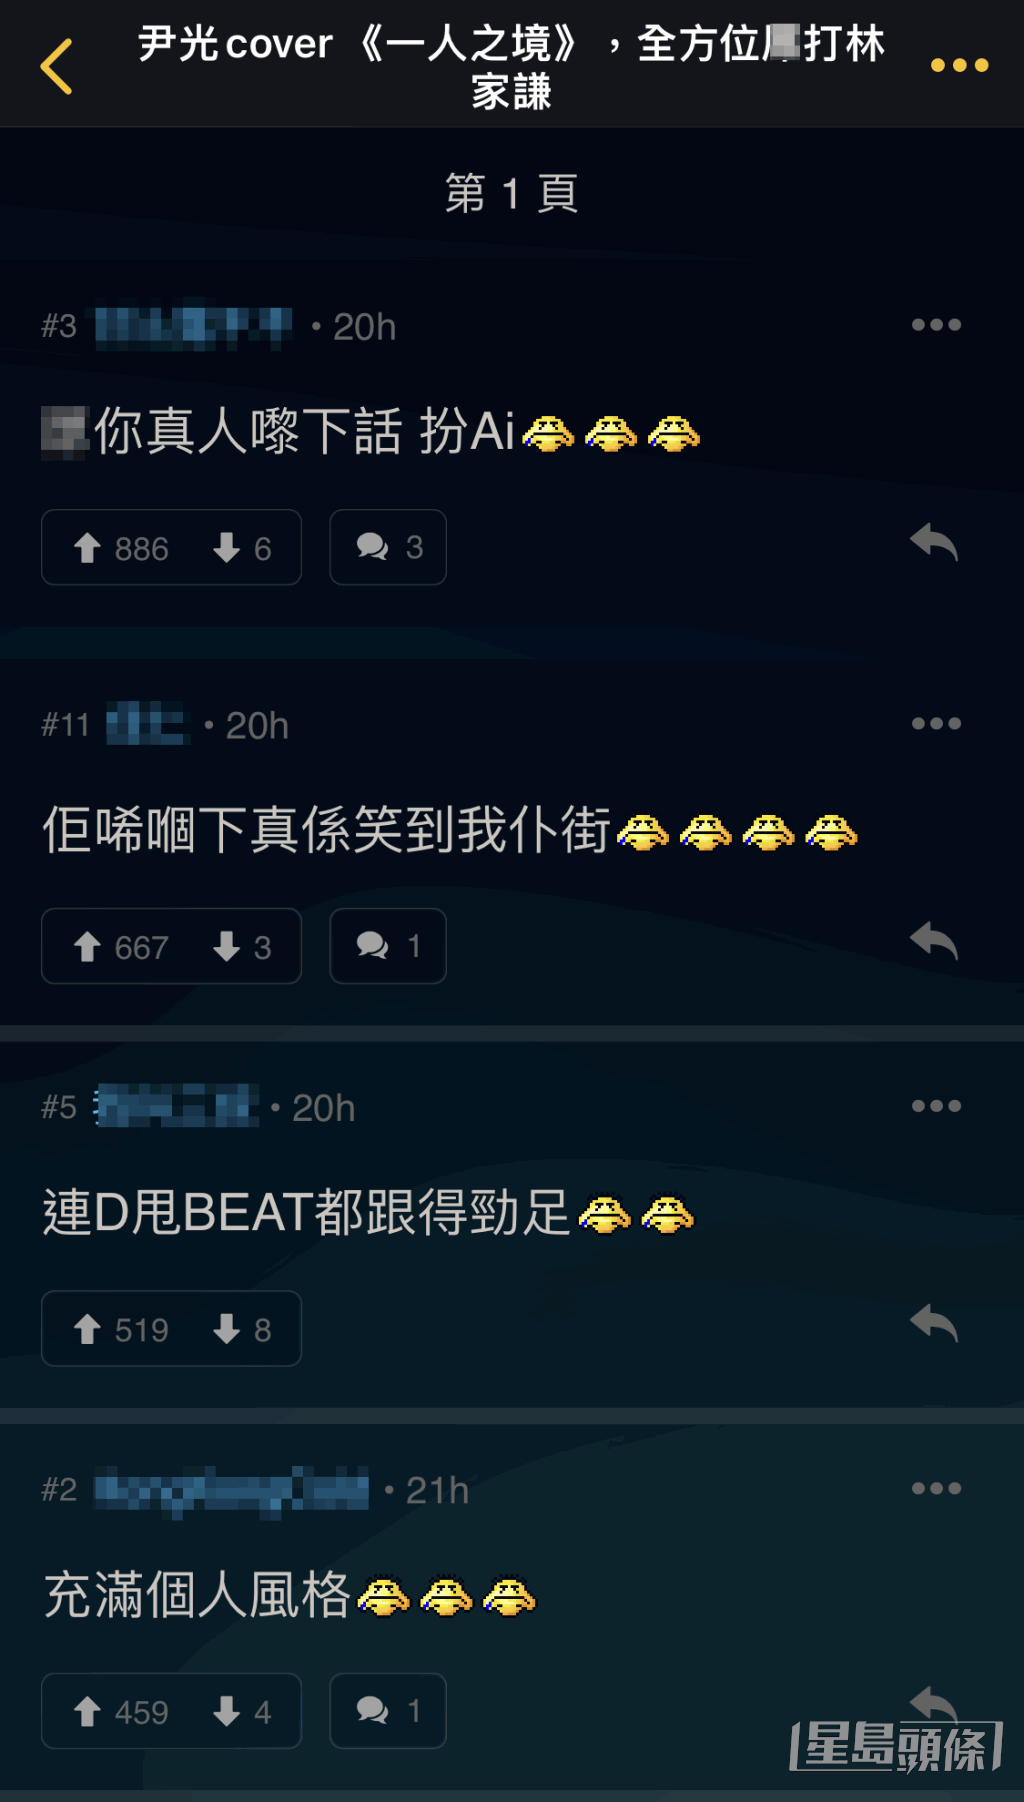 網民笑說AI尹光唱《一人之境》連甩beat都跟足。